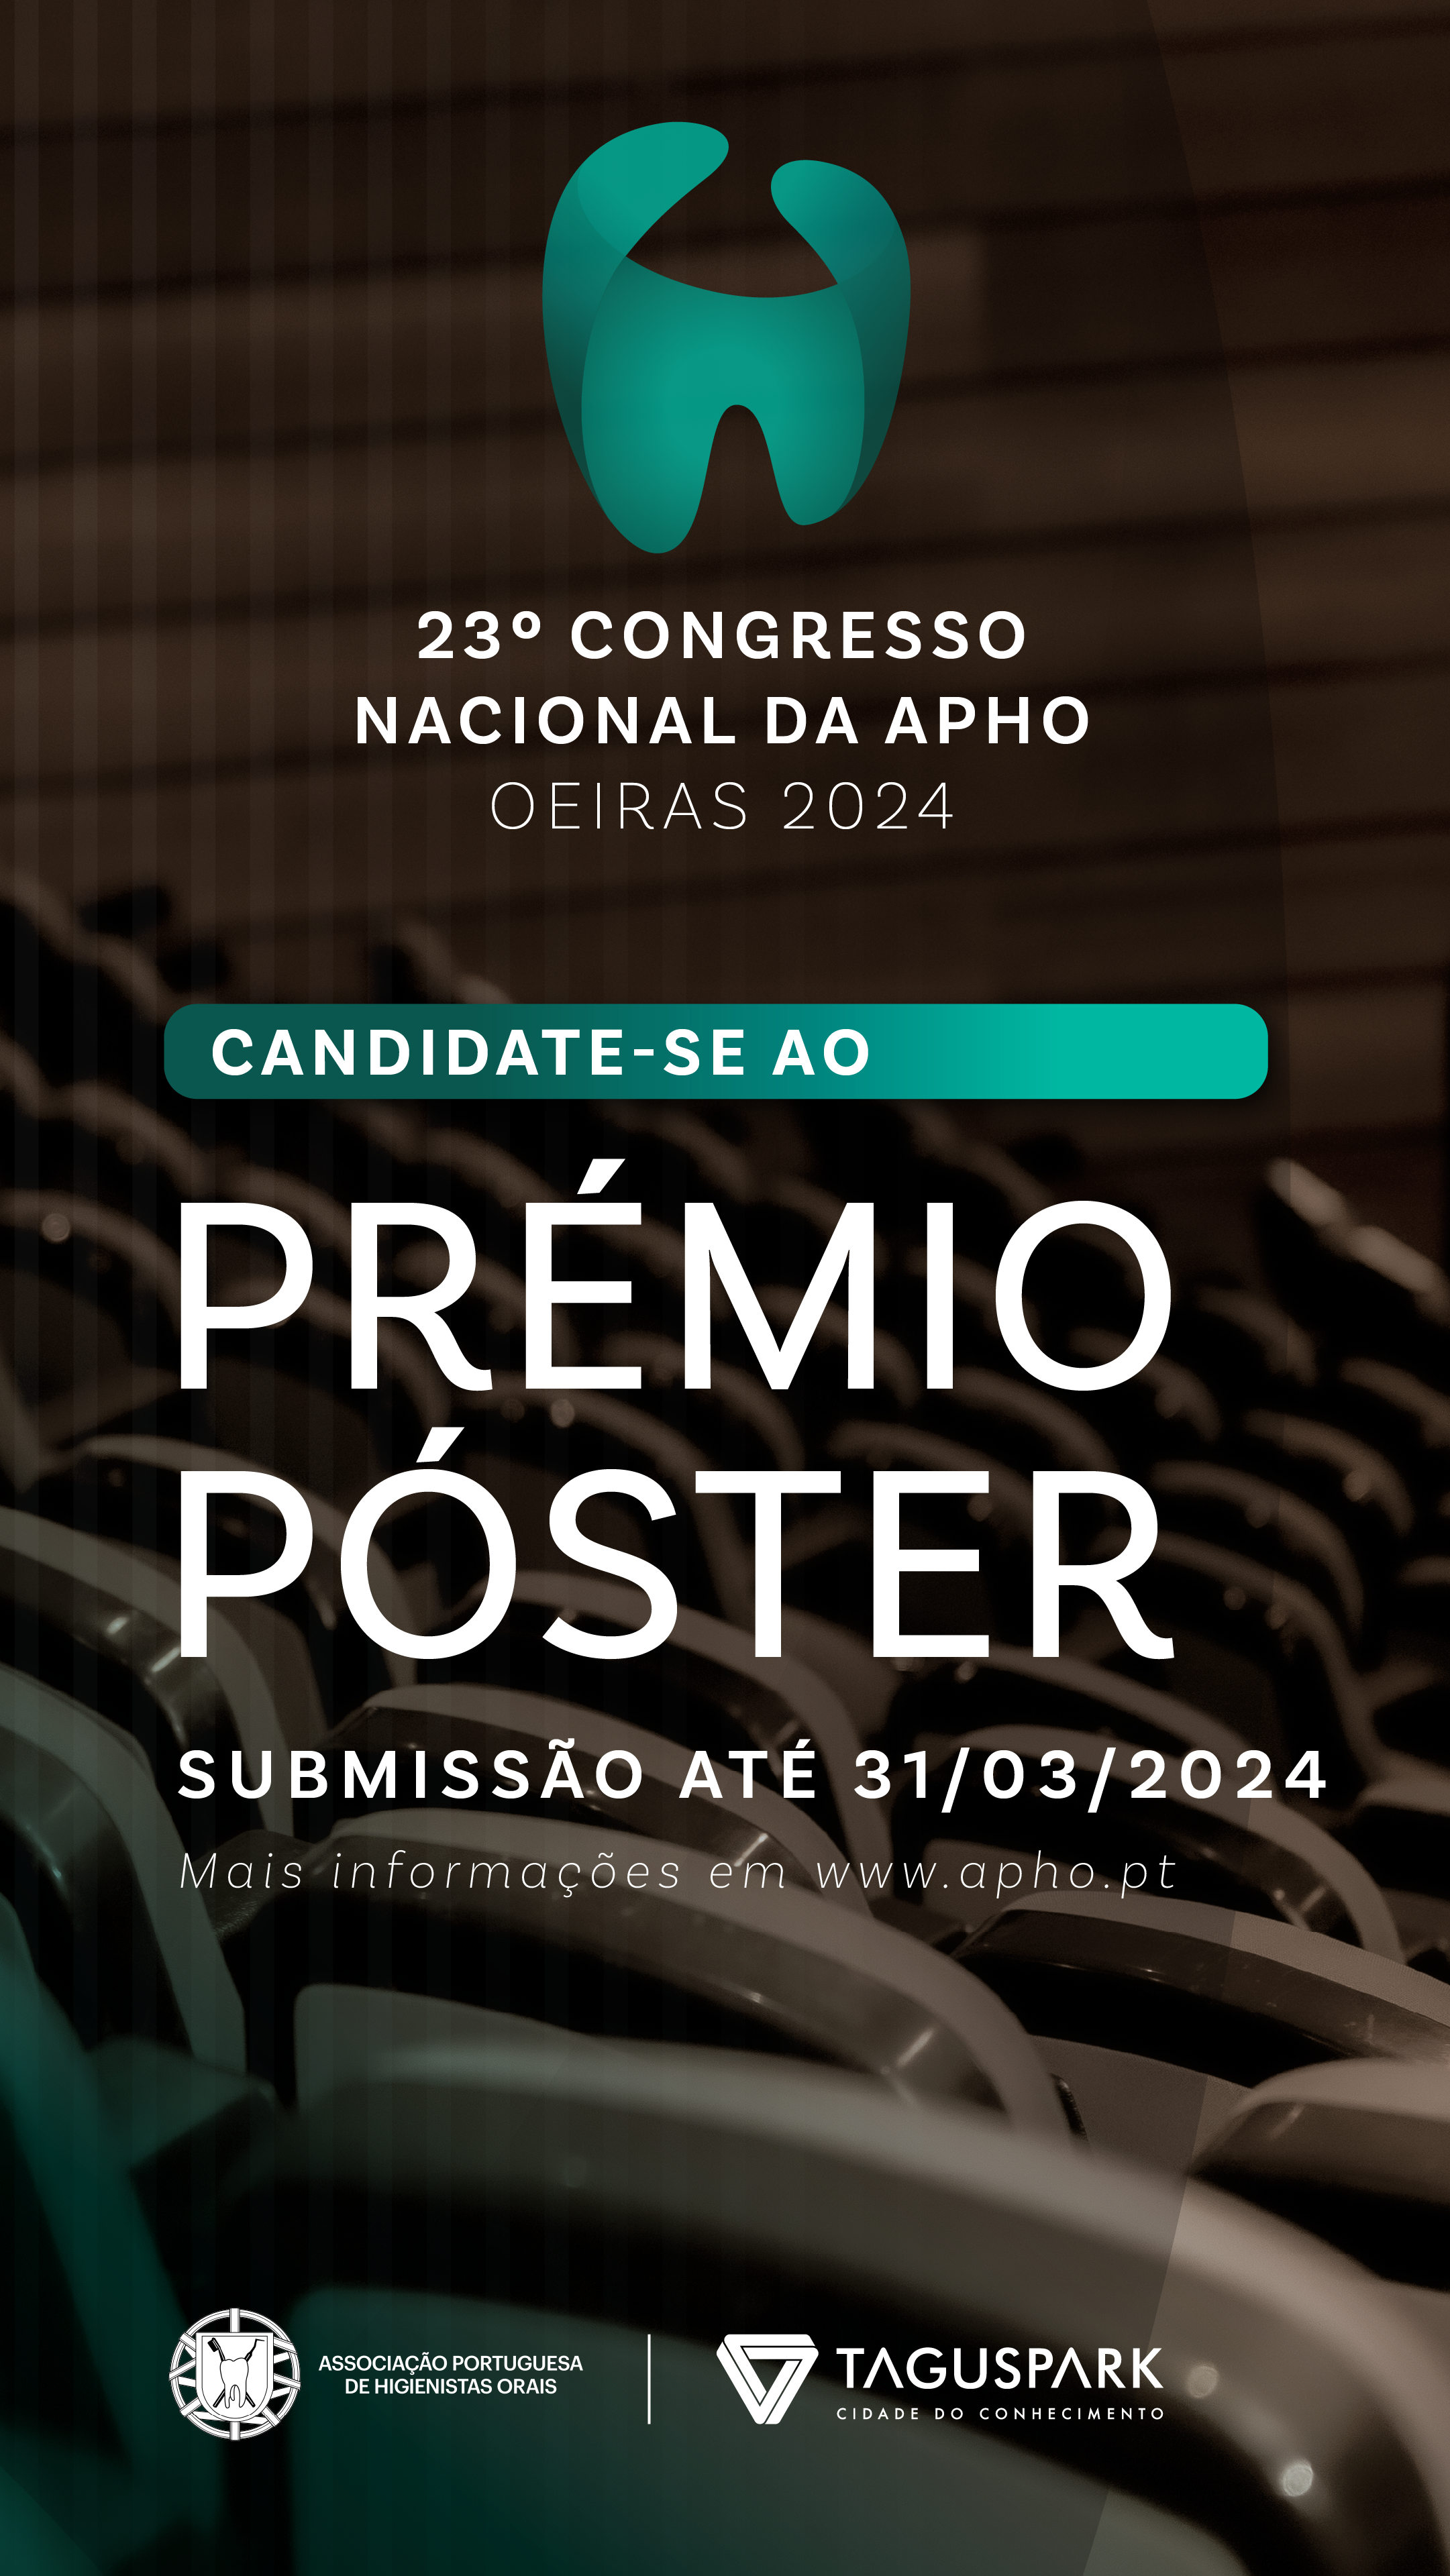 Submeta o seu póster cientifico para o 23º Congresso da APHO